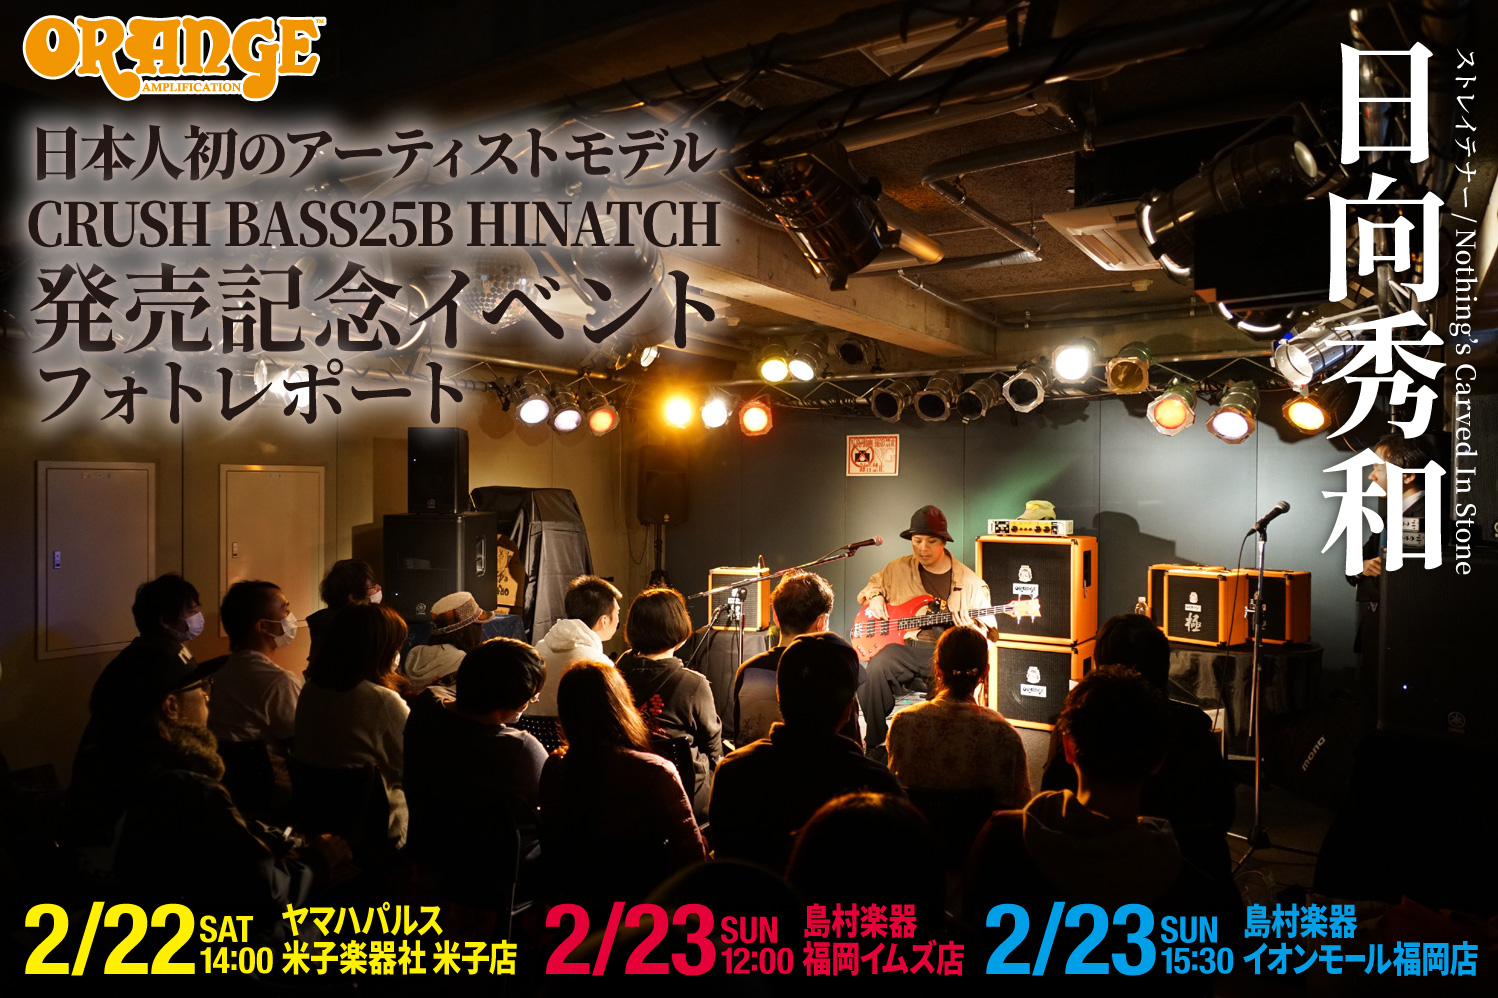 2020.02.22-23 日向秀和 CRUSH BASS25B HINATCH 発売記念イベント フォトレポート